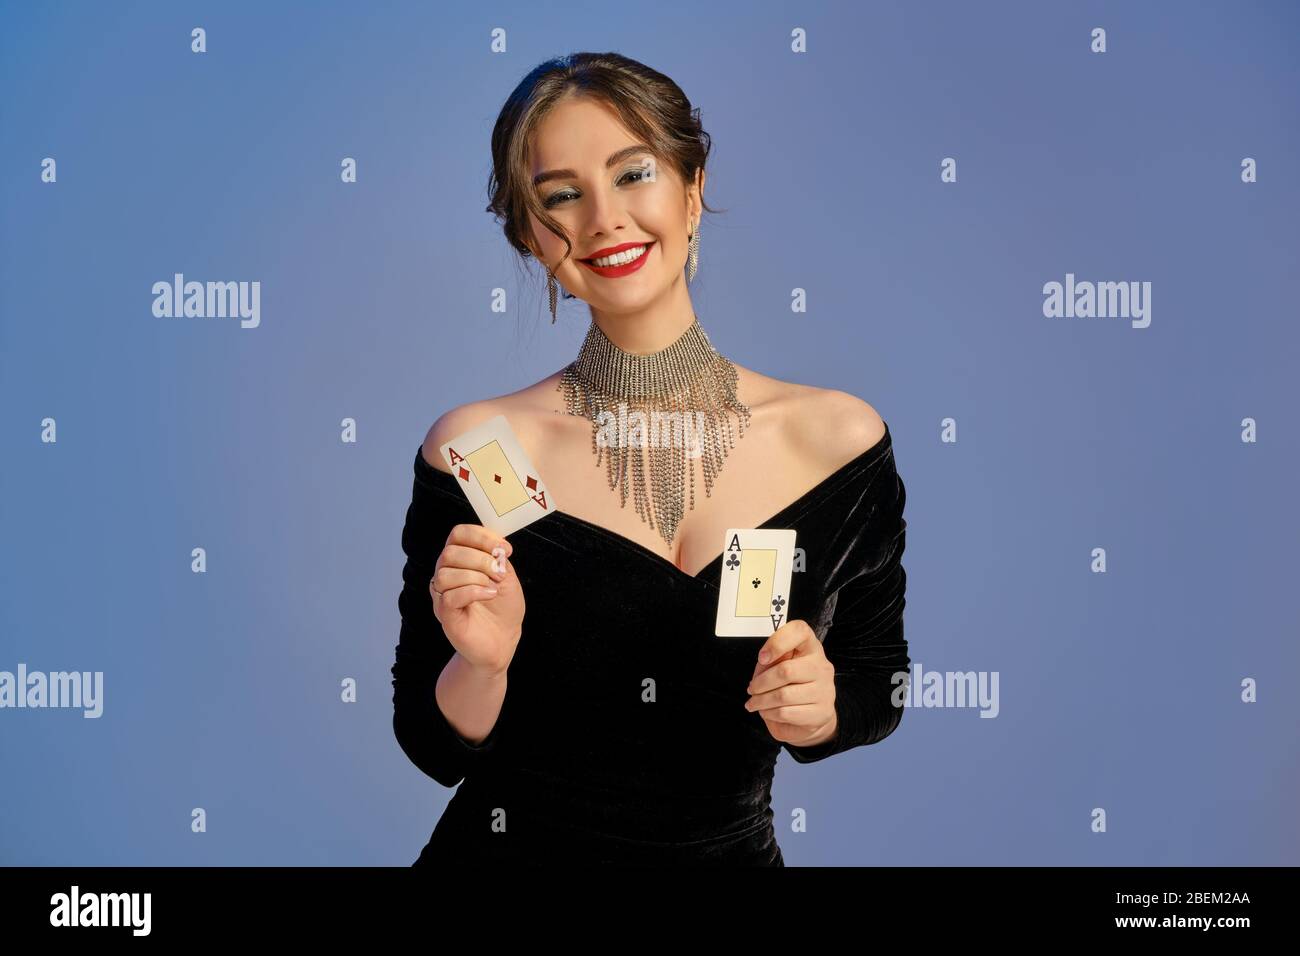 Brunette Mädchen mit nackten Schultern, in schwarzem Kleid und Schmuck.  Lächelnd, zeigt zwei Spielkarten auf blauem Hintergrund. Poker, Casino.  Nahaufnahme Stockfotografie - Alamy